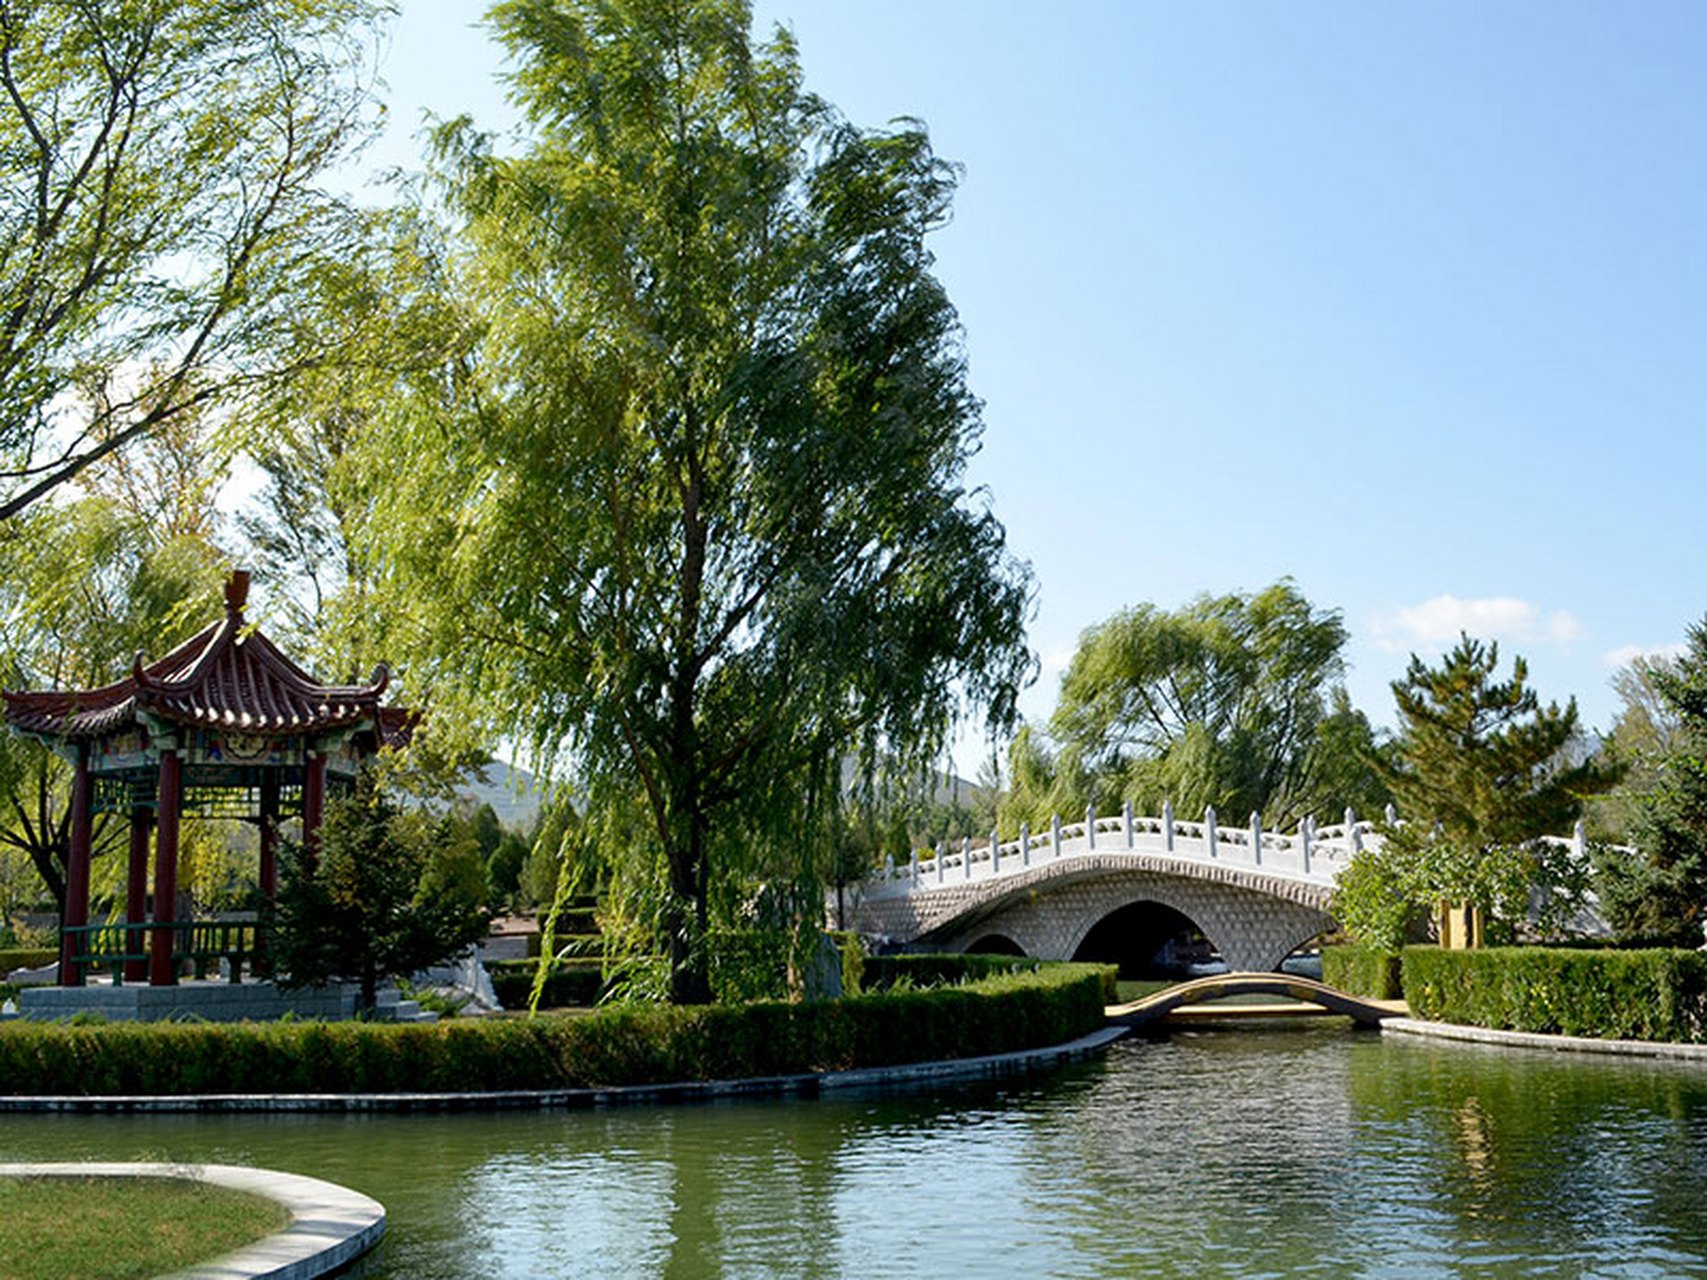 中华永久陵园东邻八达岭长城,野生动物园等著名风景区,如果不赶时间